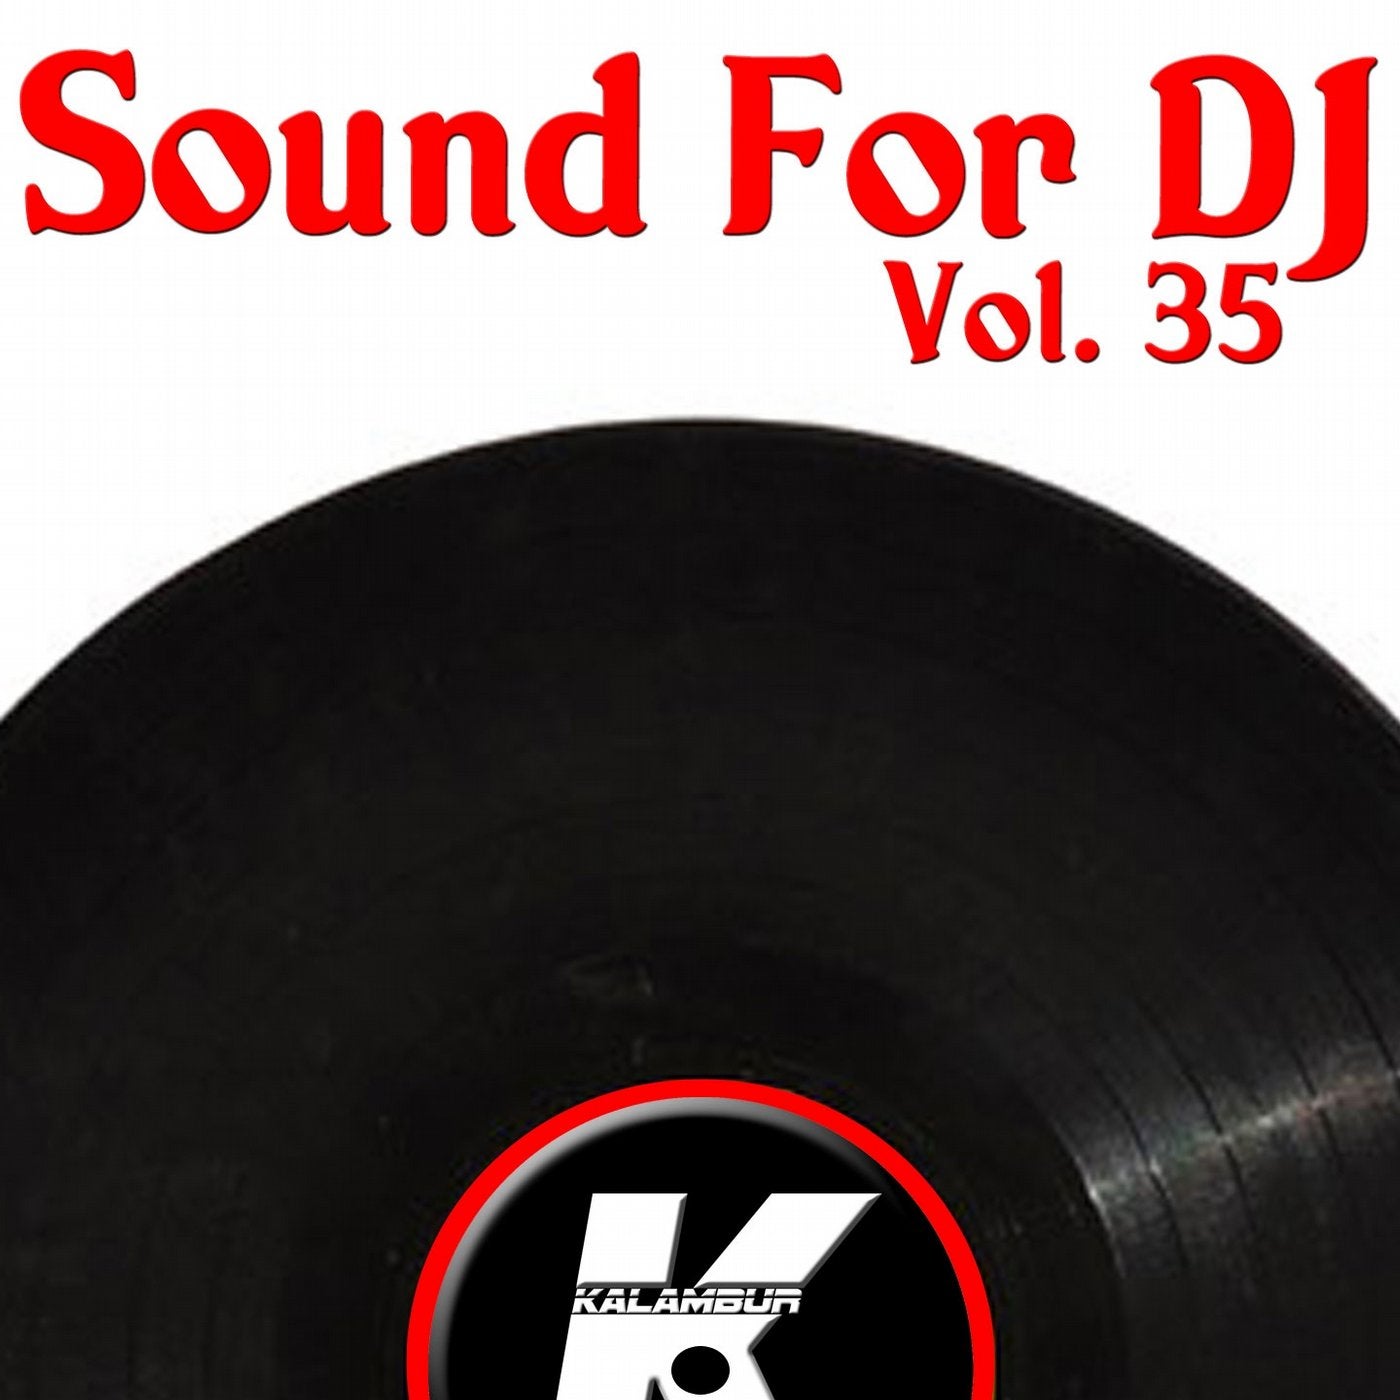 SOUND FOR DJ VOL 35